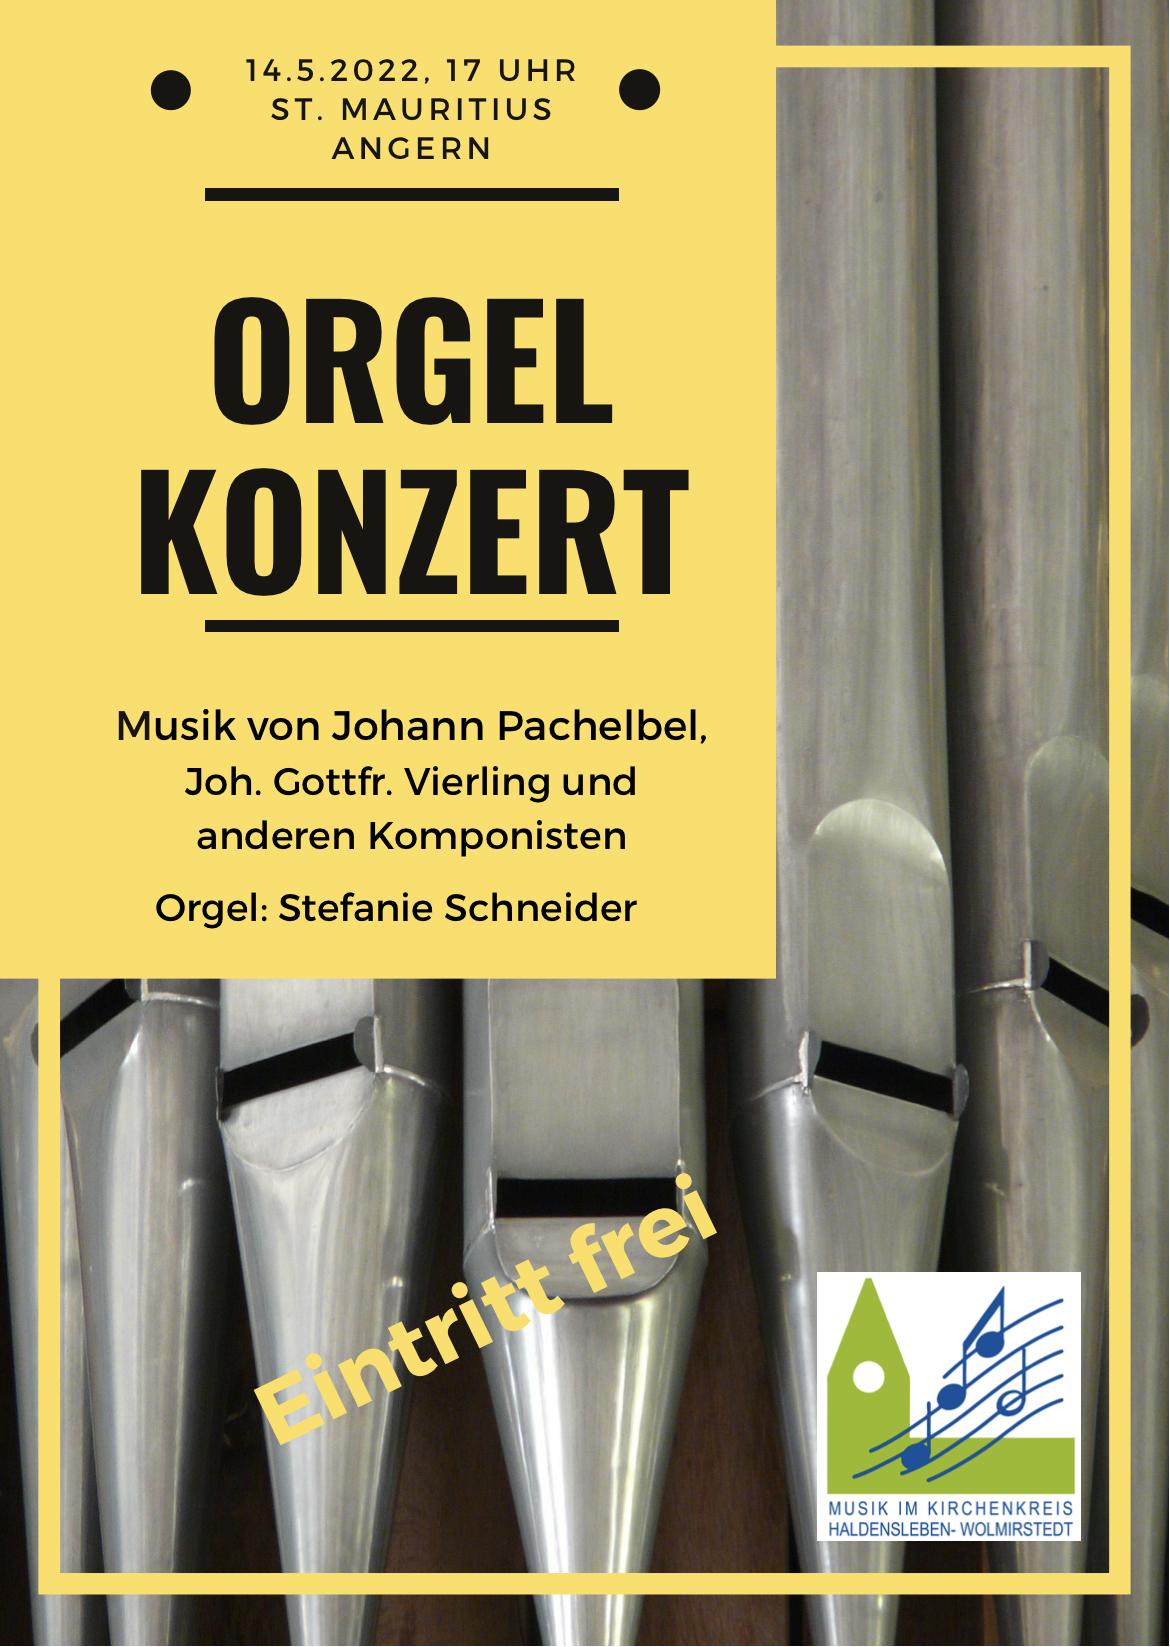 Orgelkonzert in der Kirche Angern am 14.5.2022